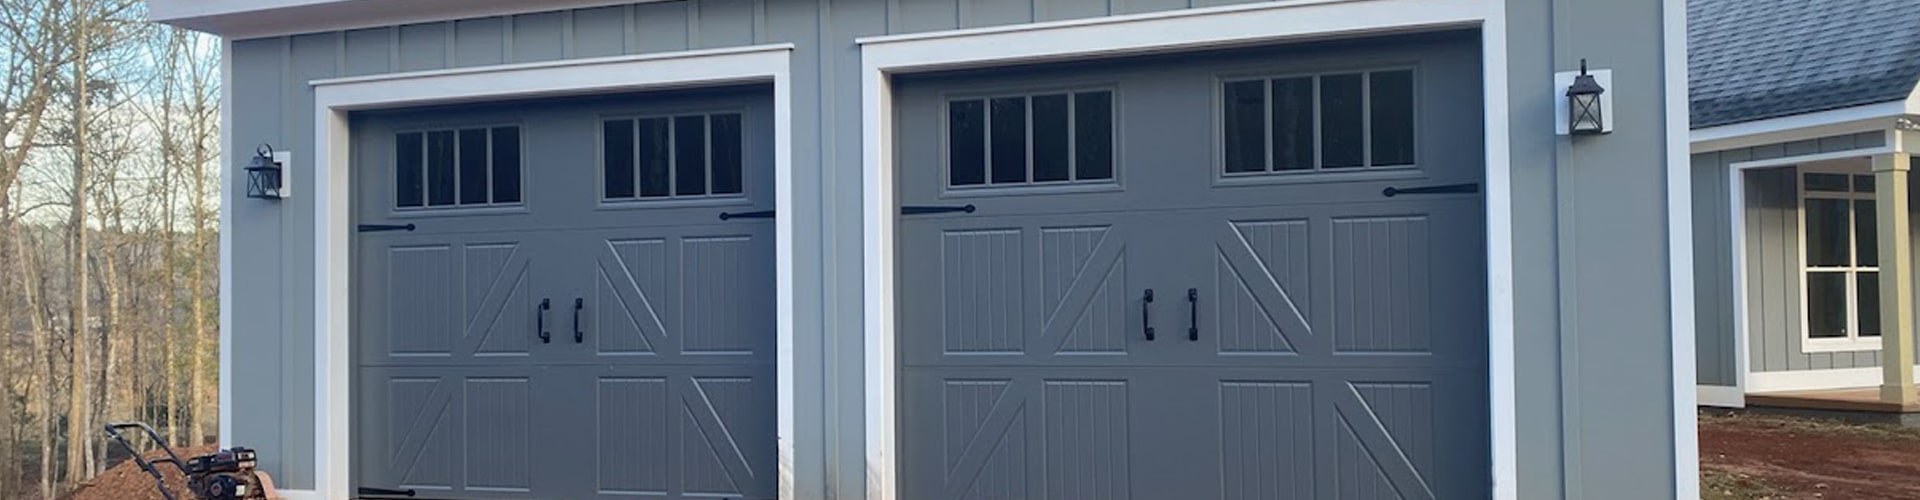 All Access Garage Doors Repair Reviews in Thomaston, GA